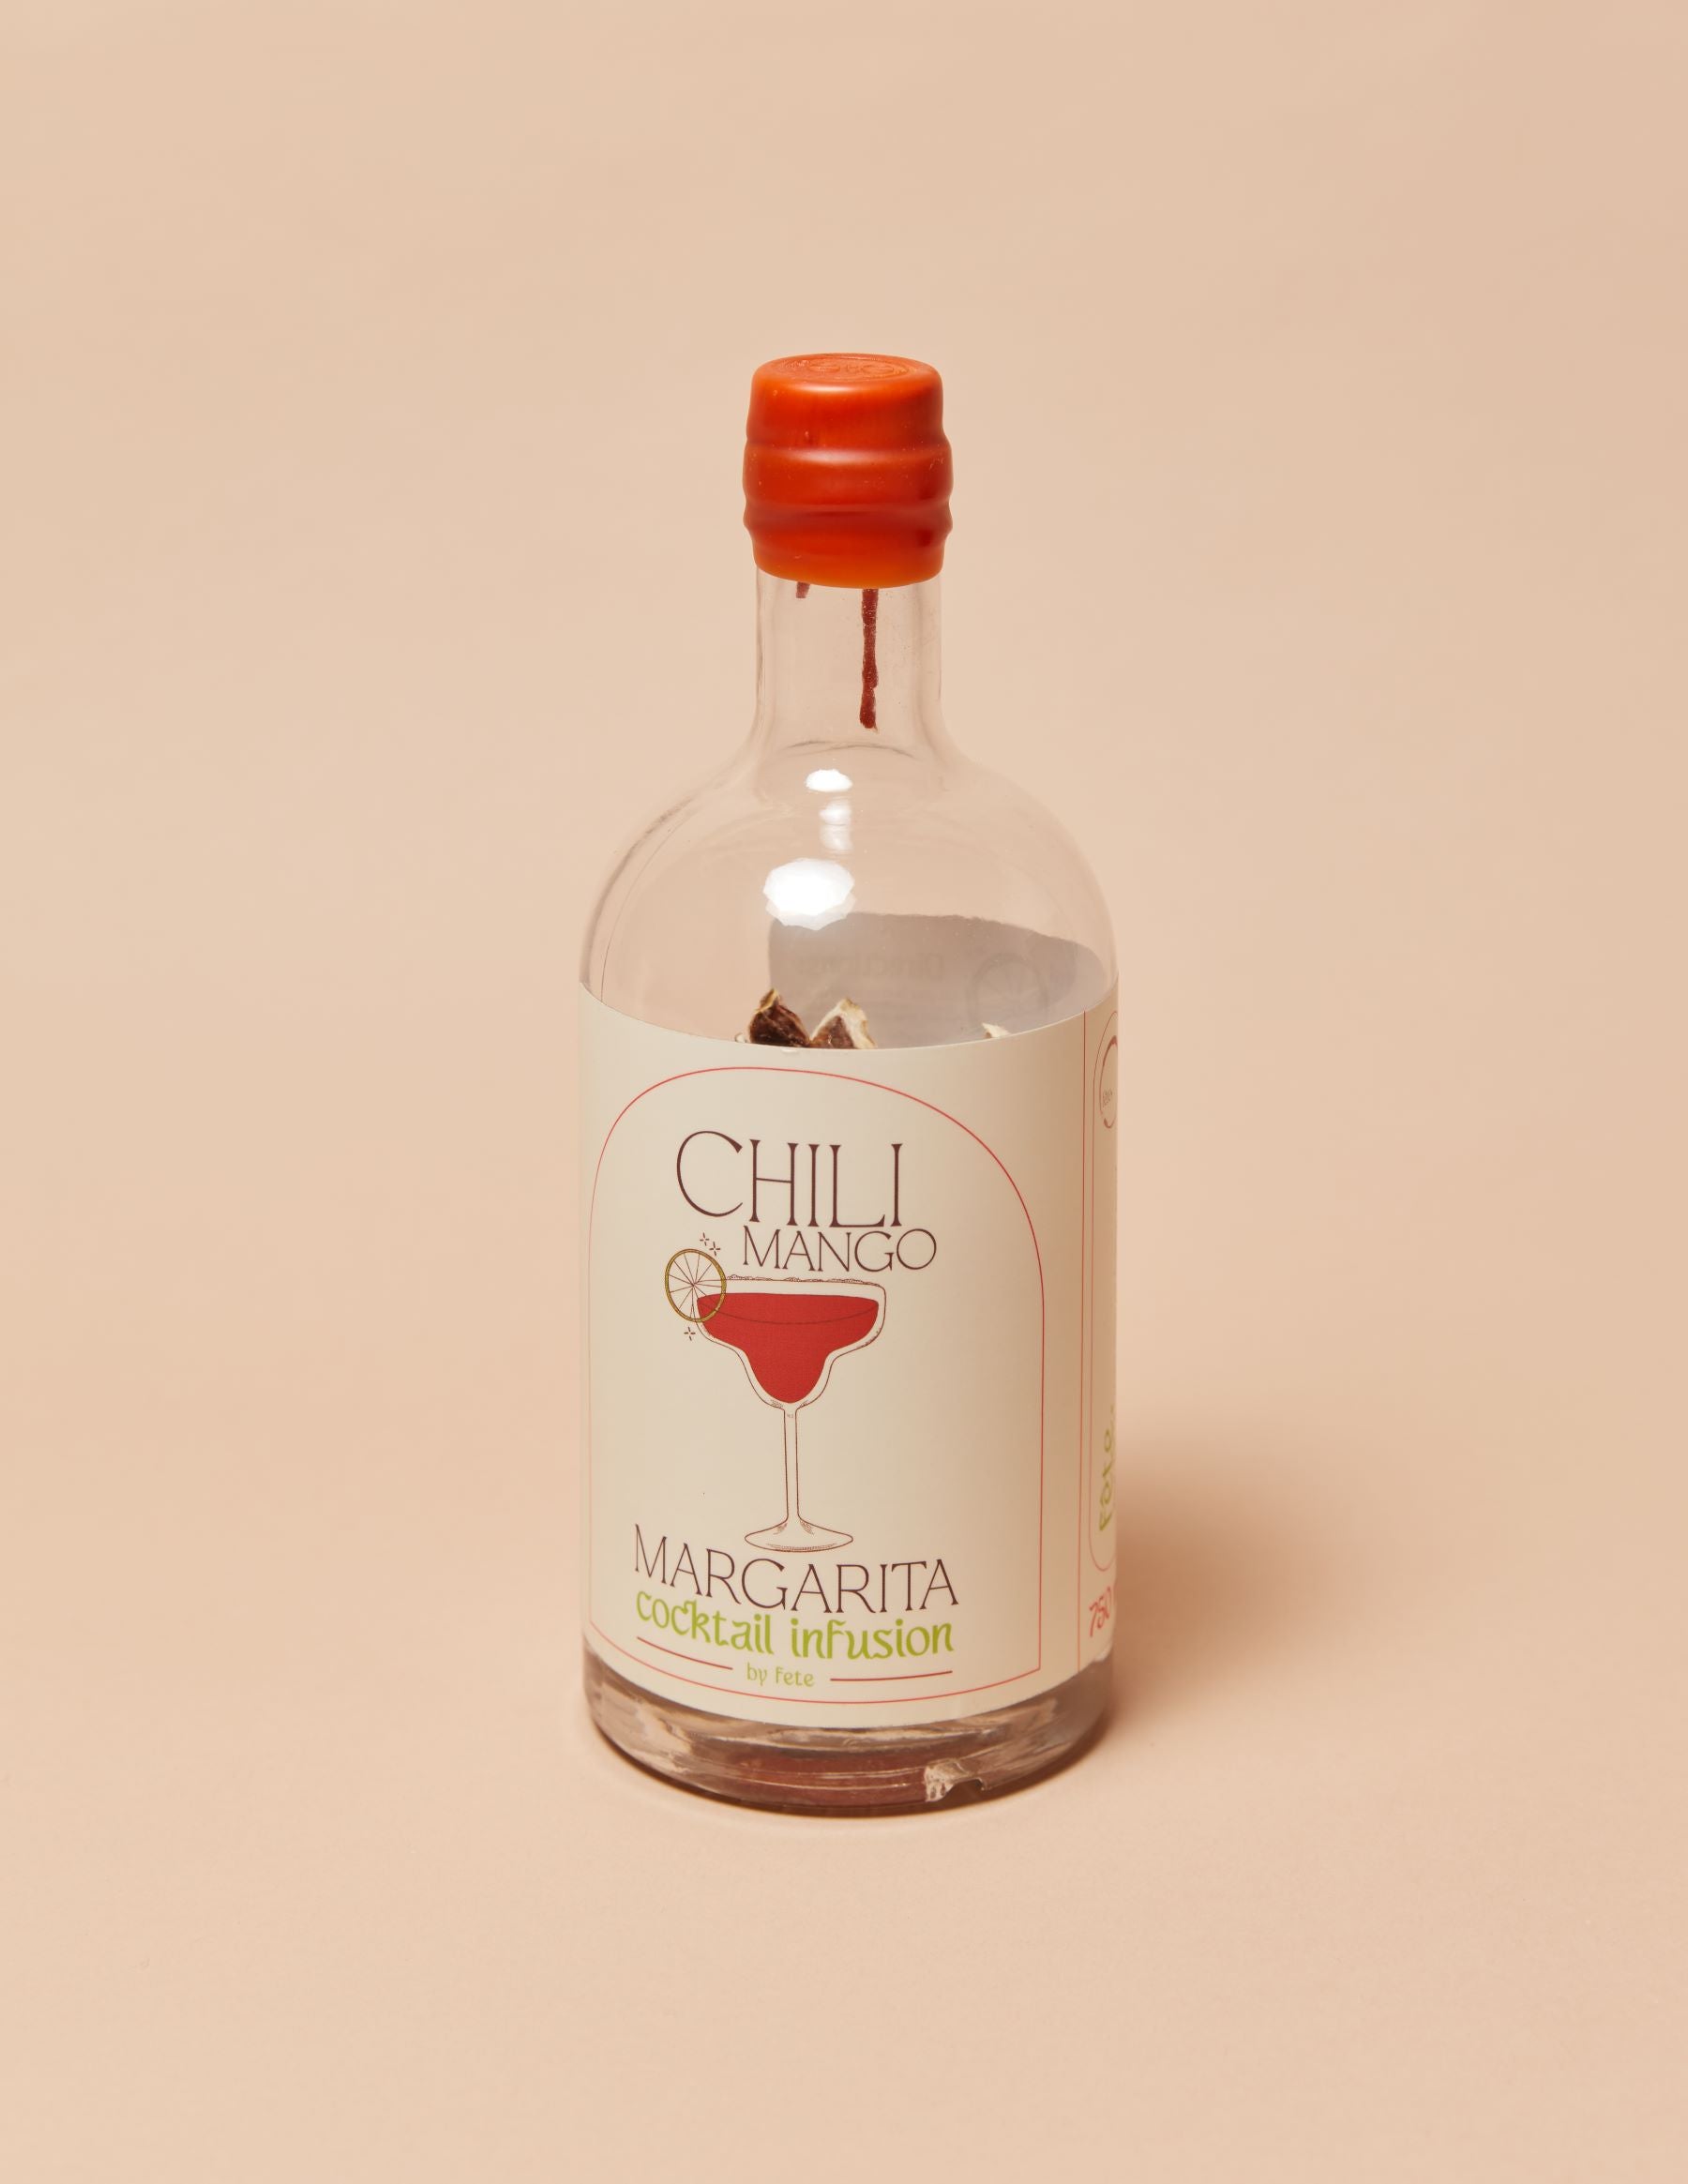 Chili Mango Margarita